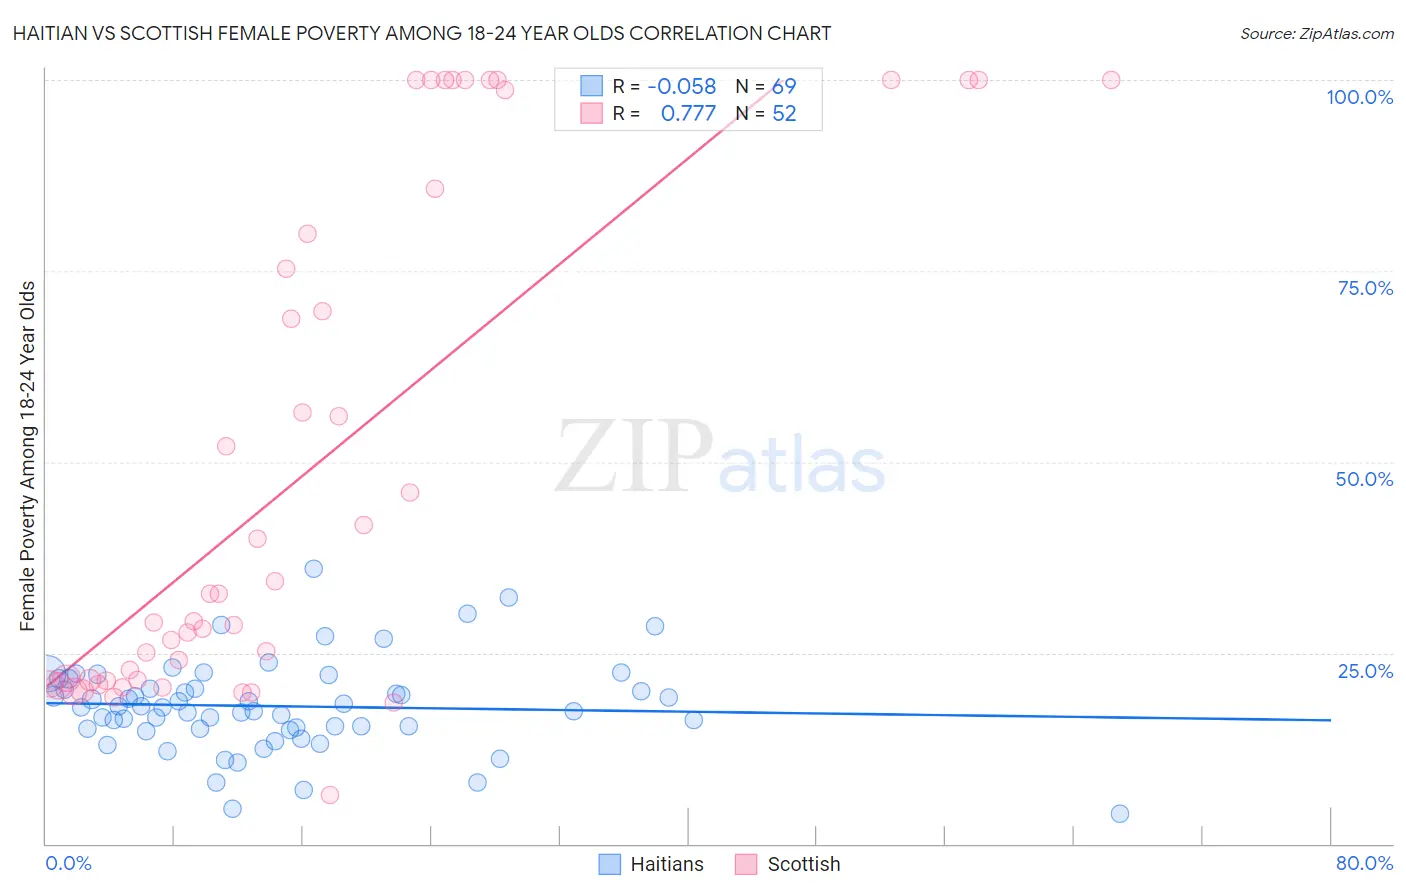 Haitian vs Scottish Female Poverty Among 18-24 Year Olds